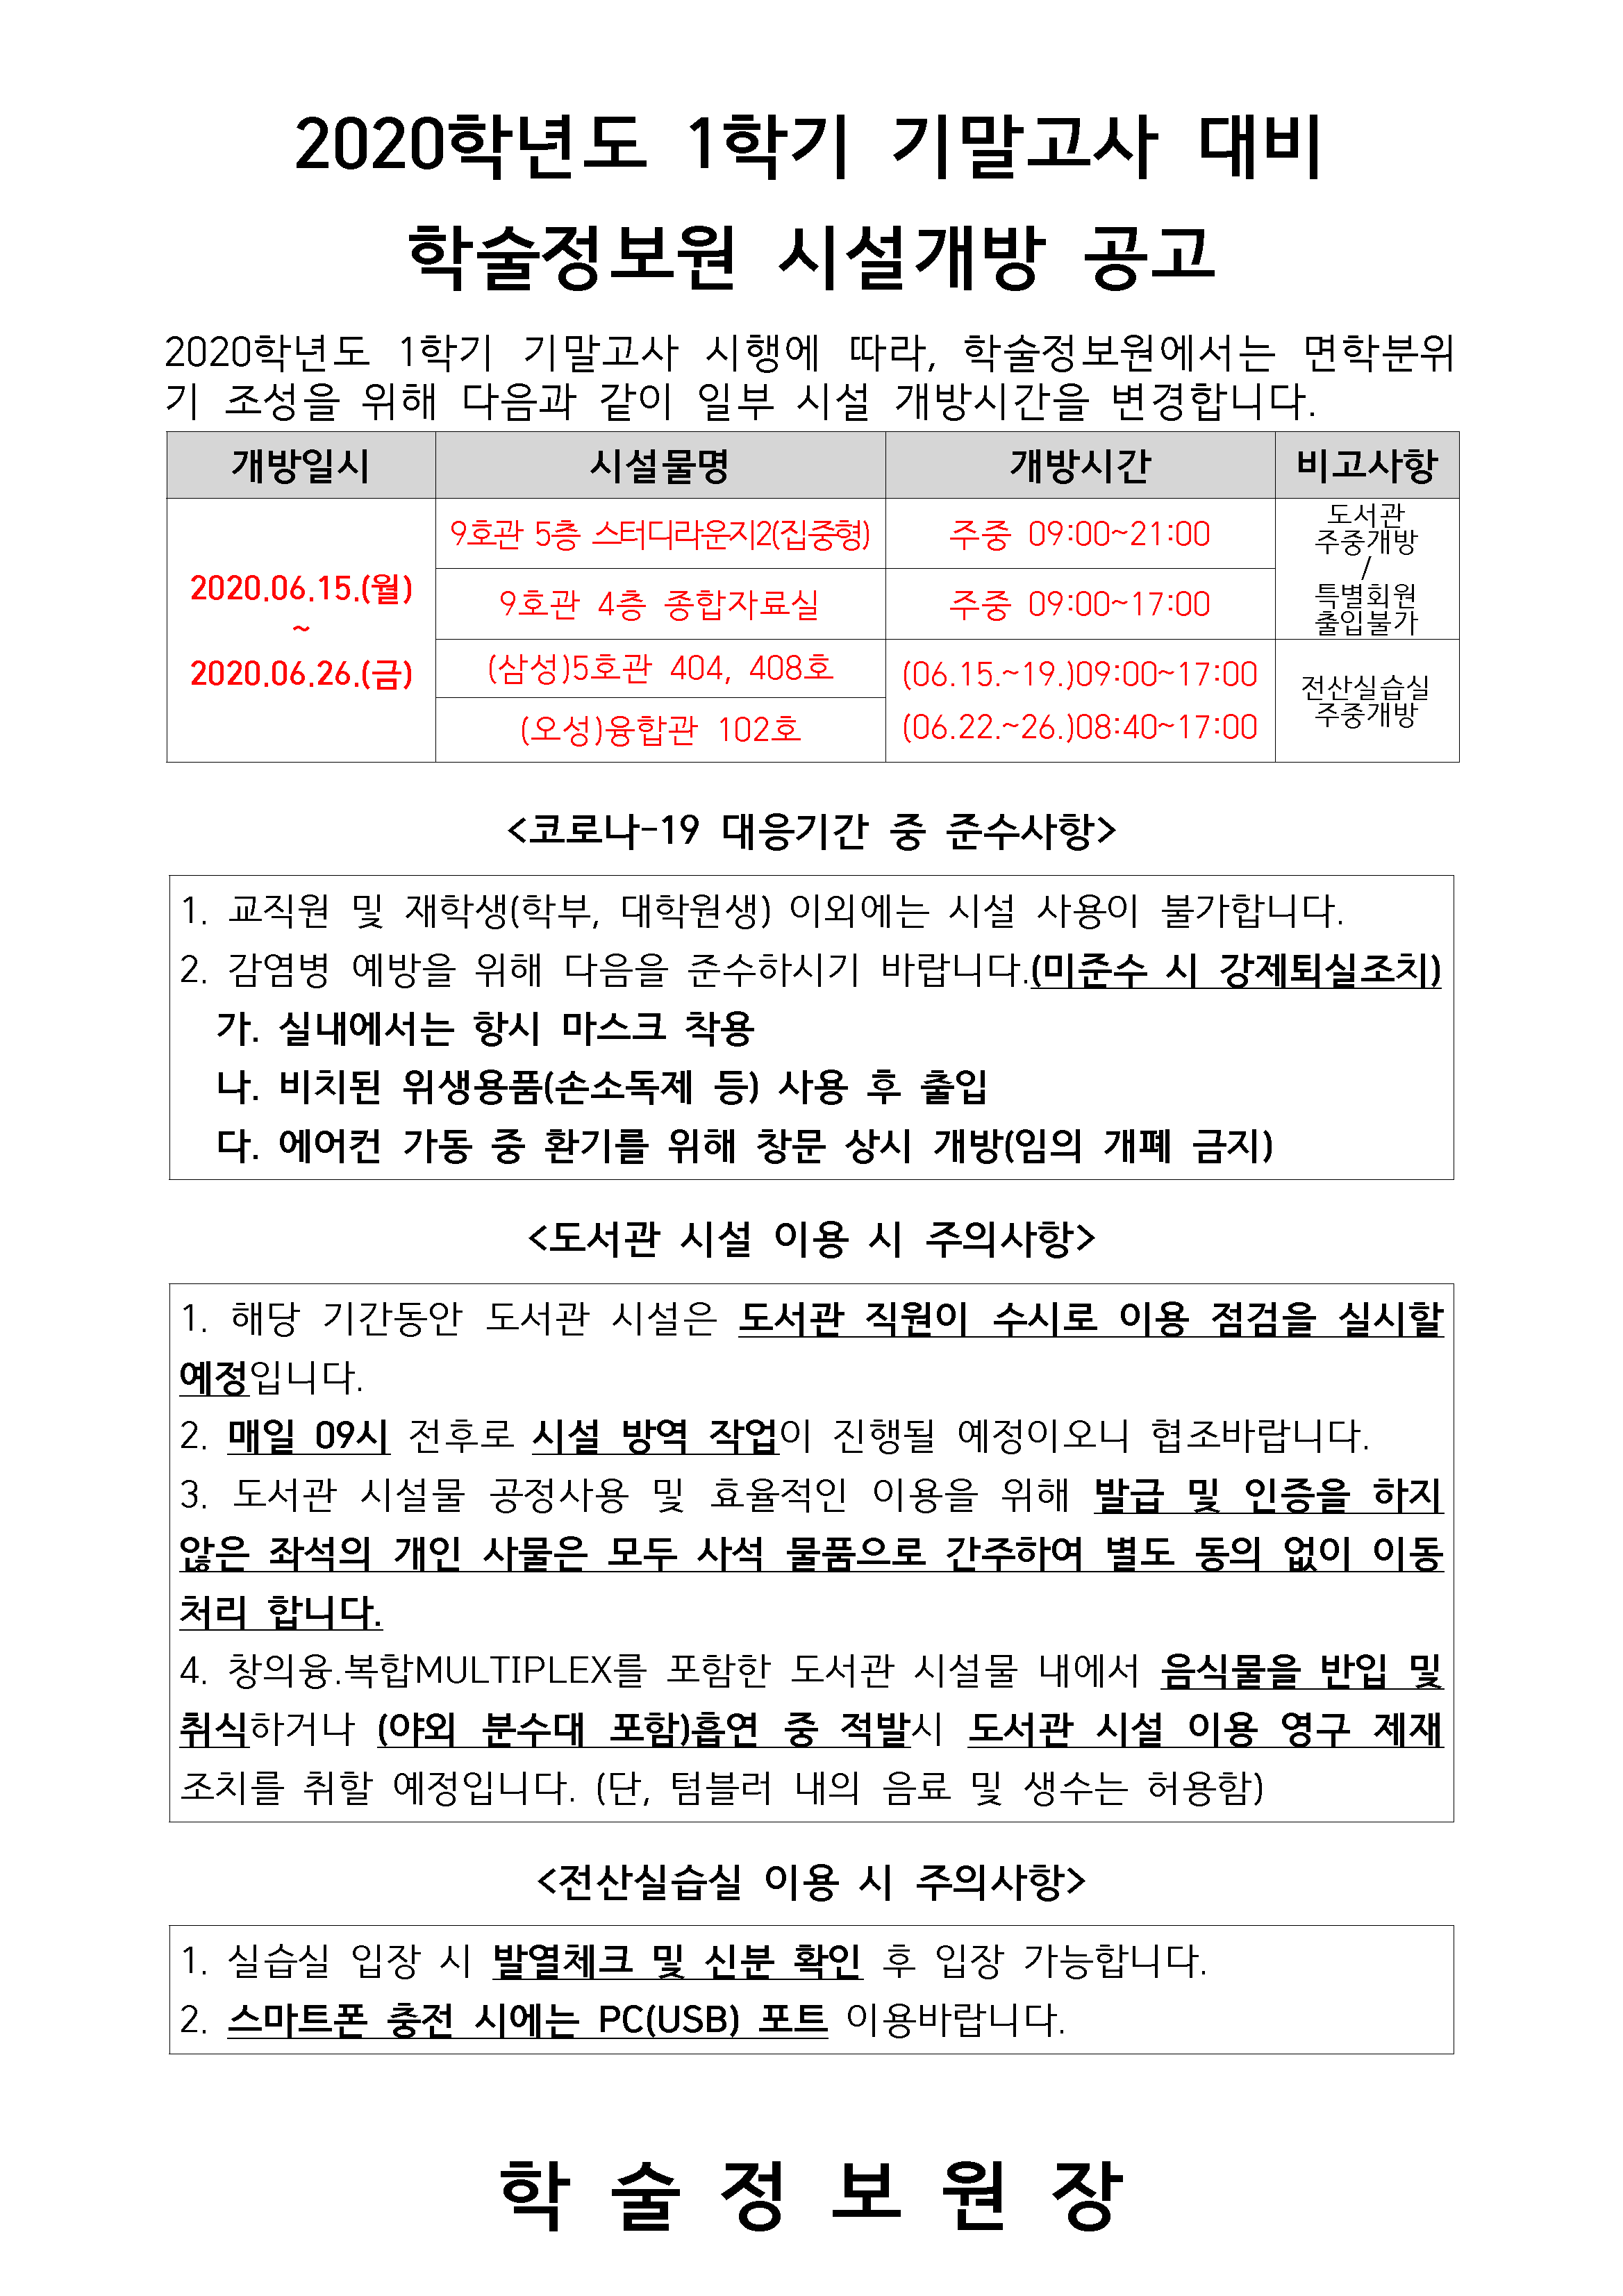 공고문(2019-2학기 기말고사).png